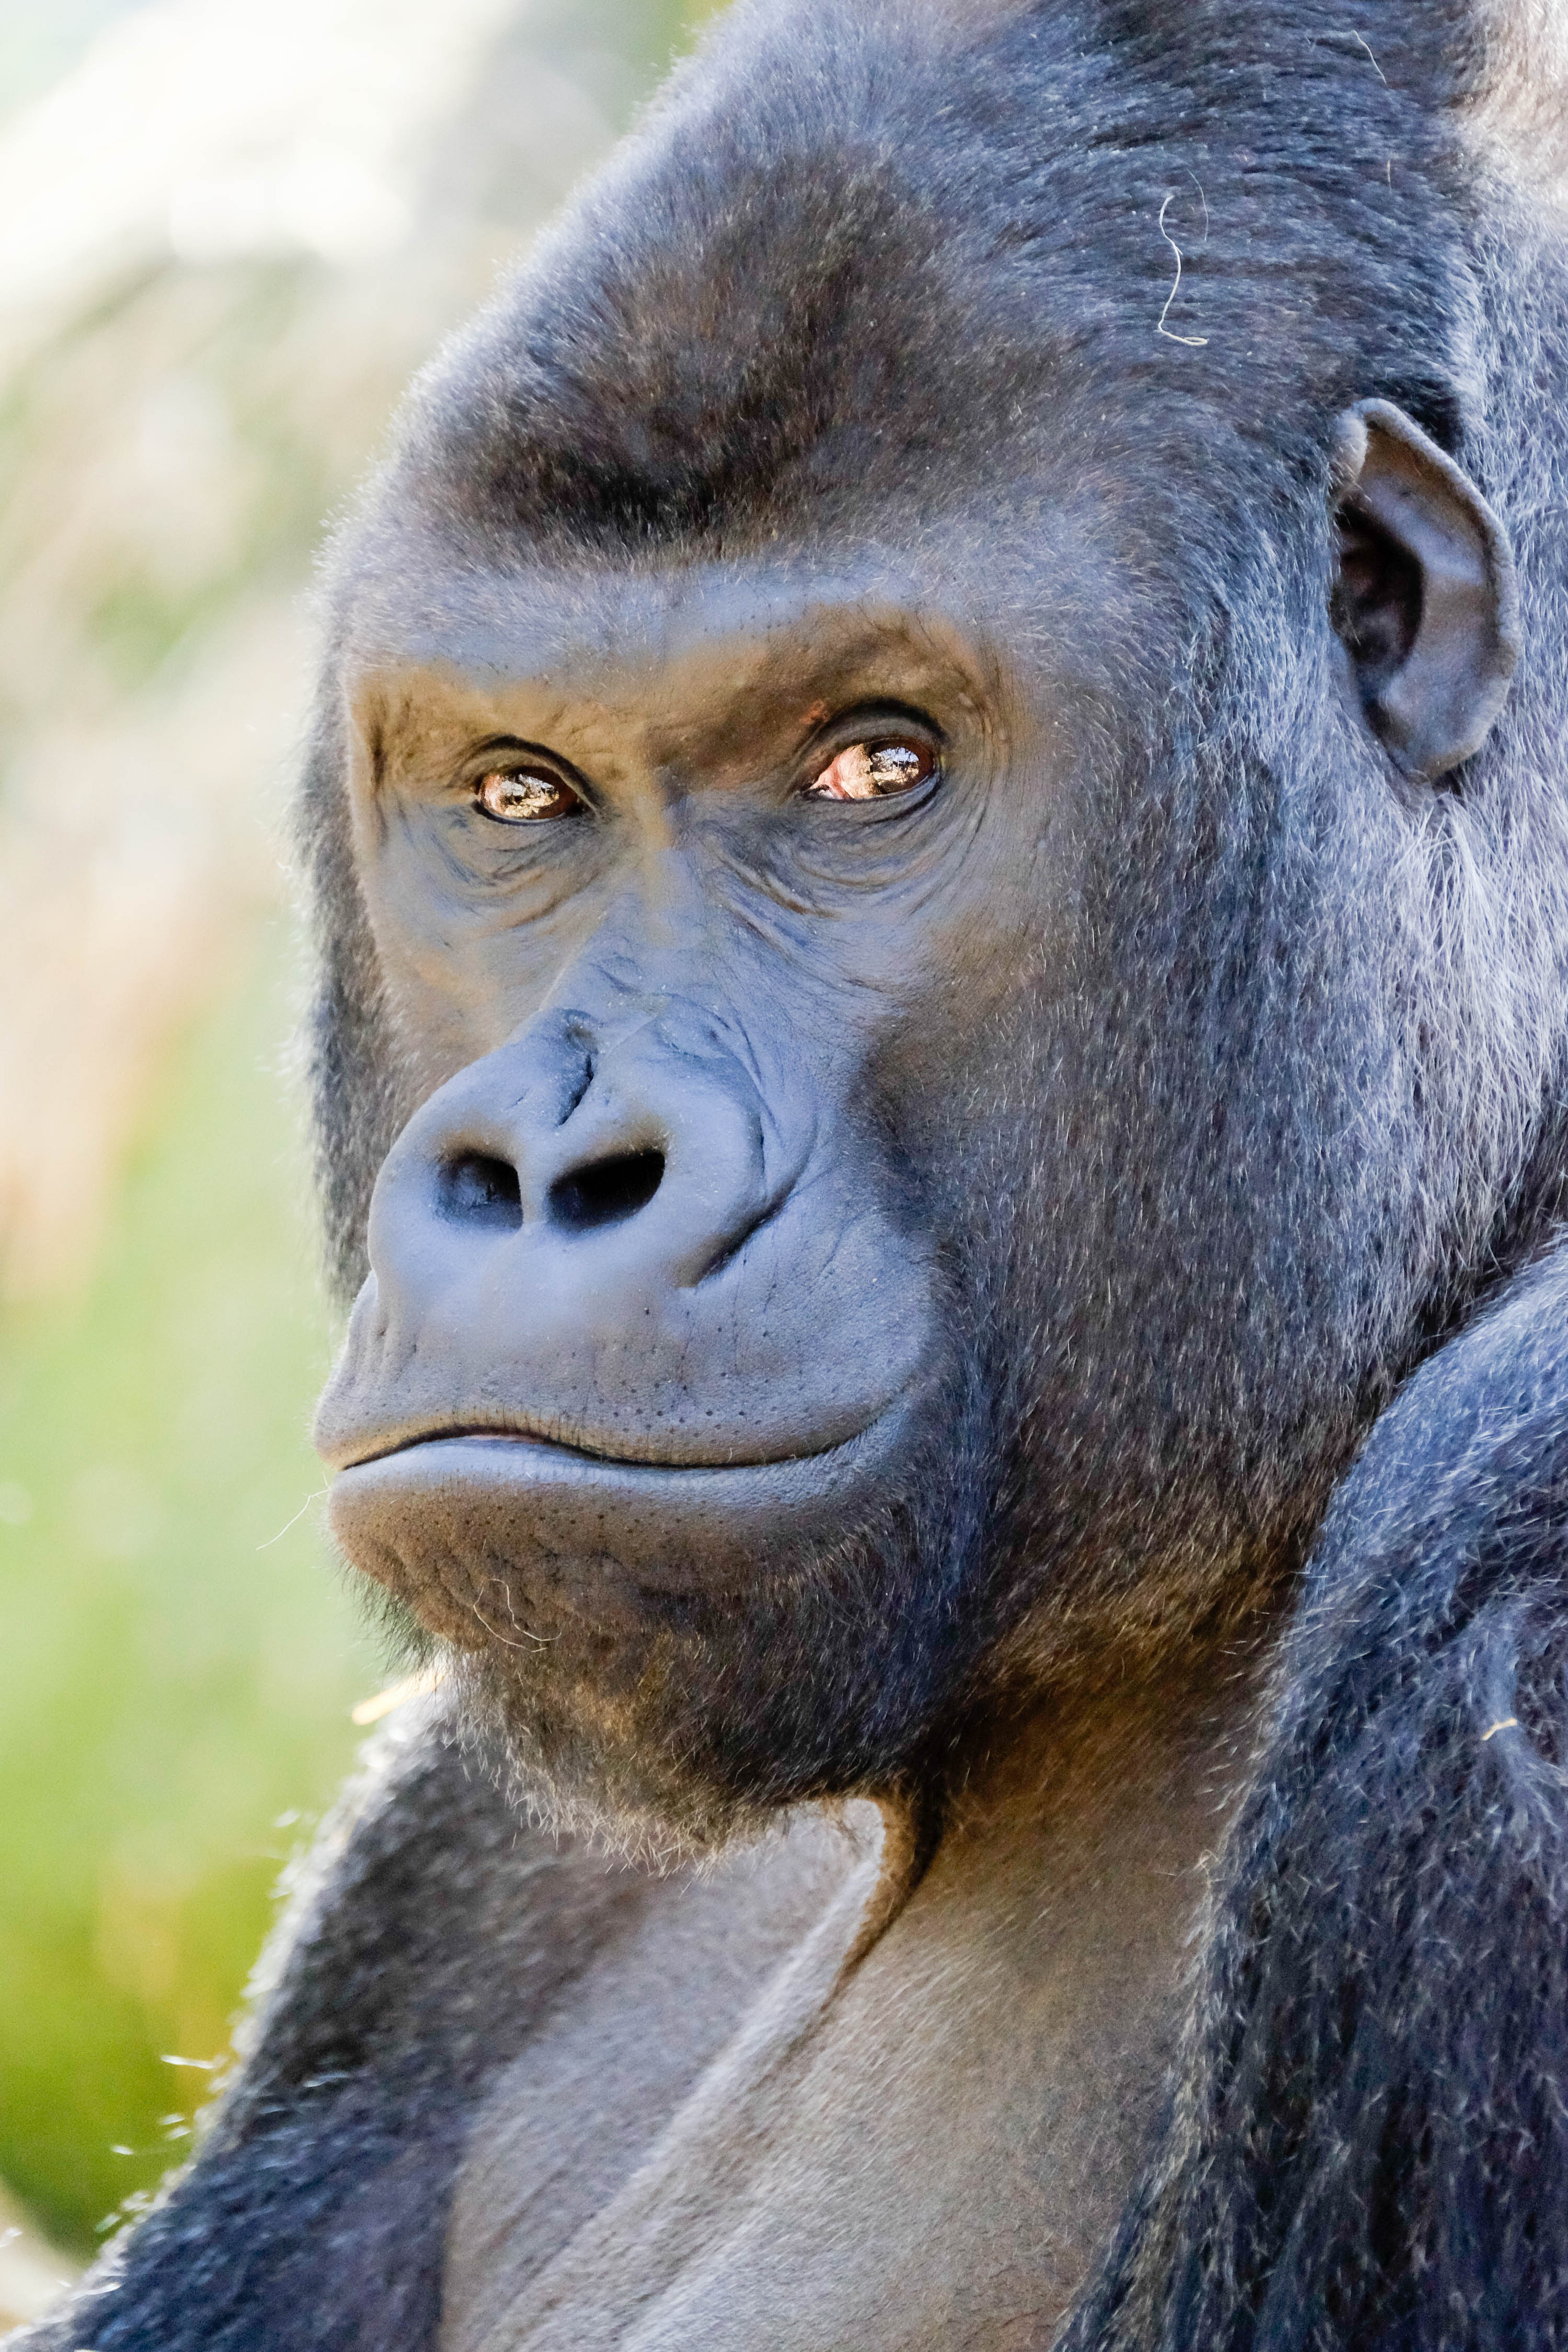 gorilla silverback